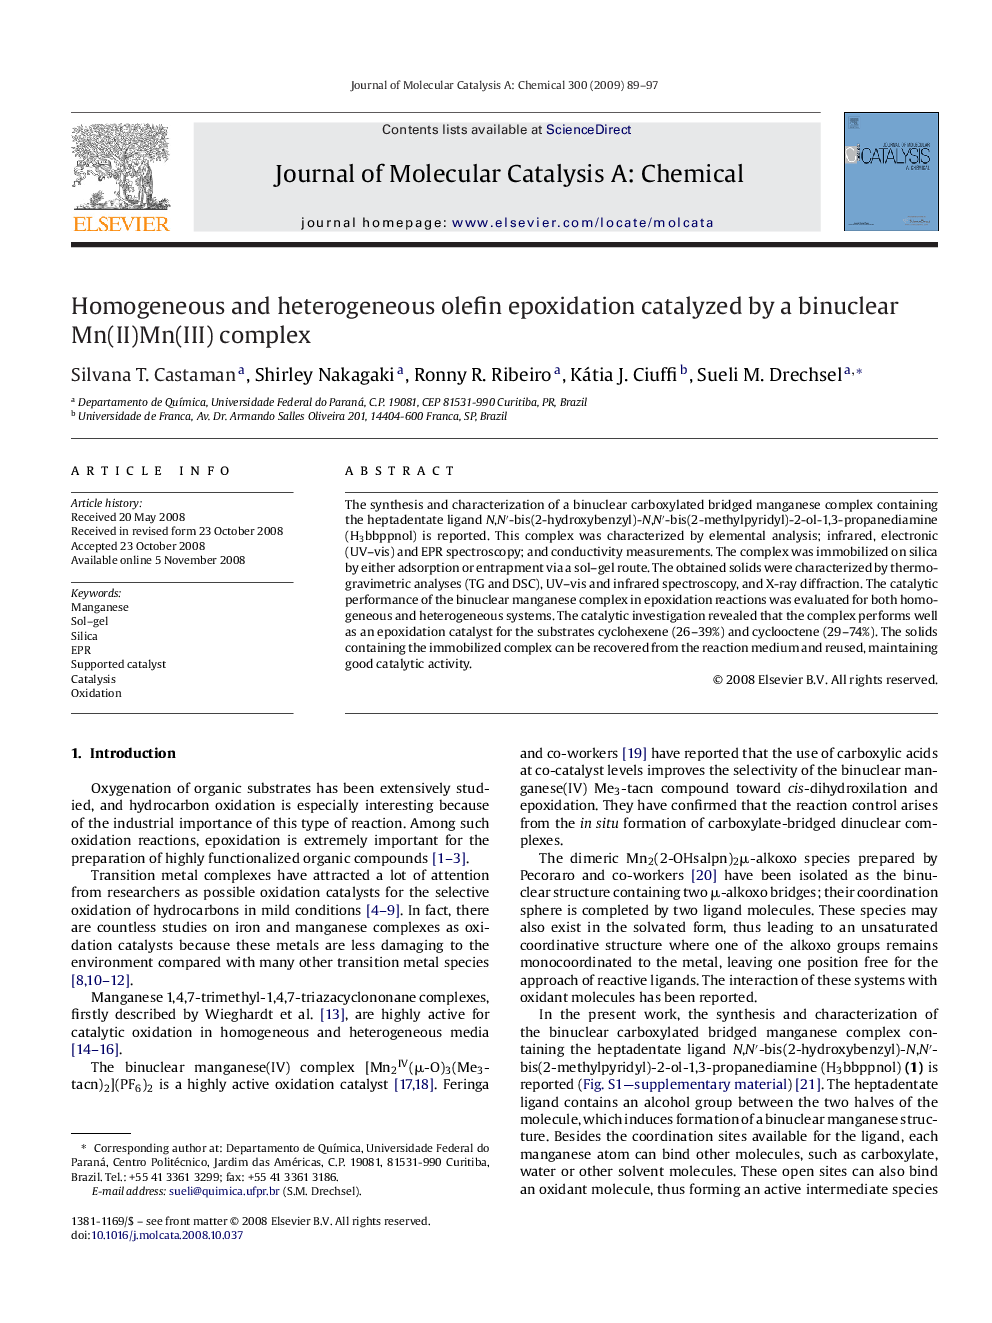 Homogeneous and heterogeneous olefin epoxidation catalyzed by a binuclear Mn(II)Mn(III) complex